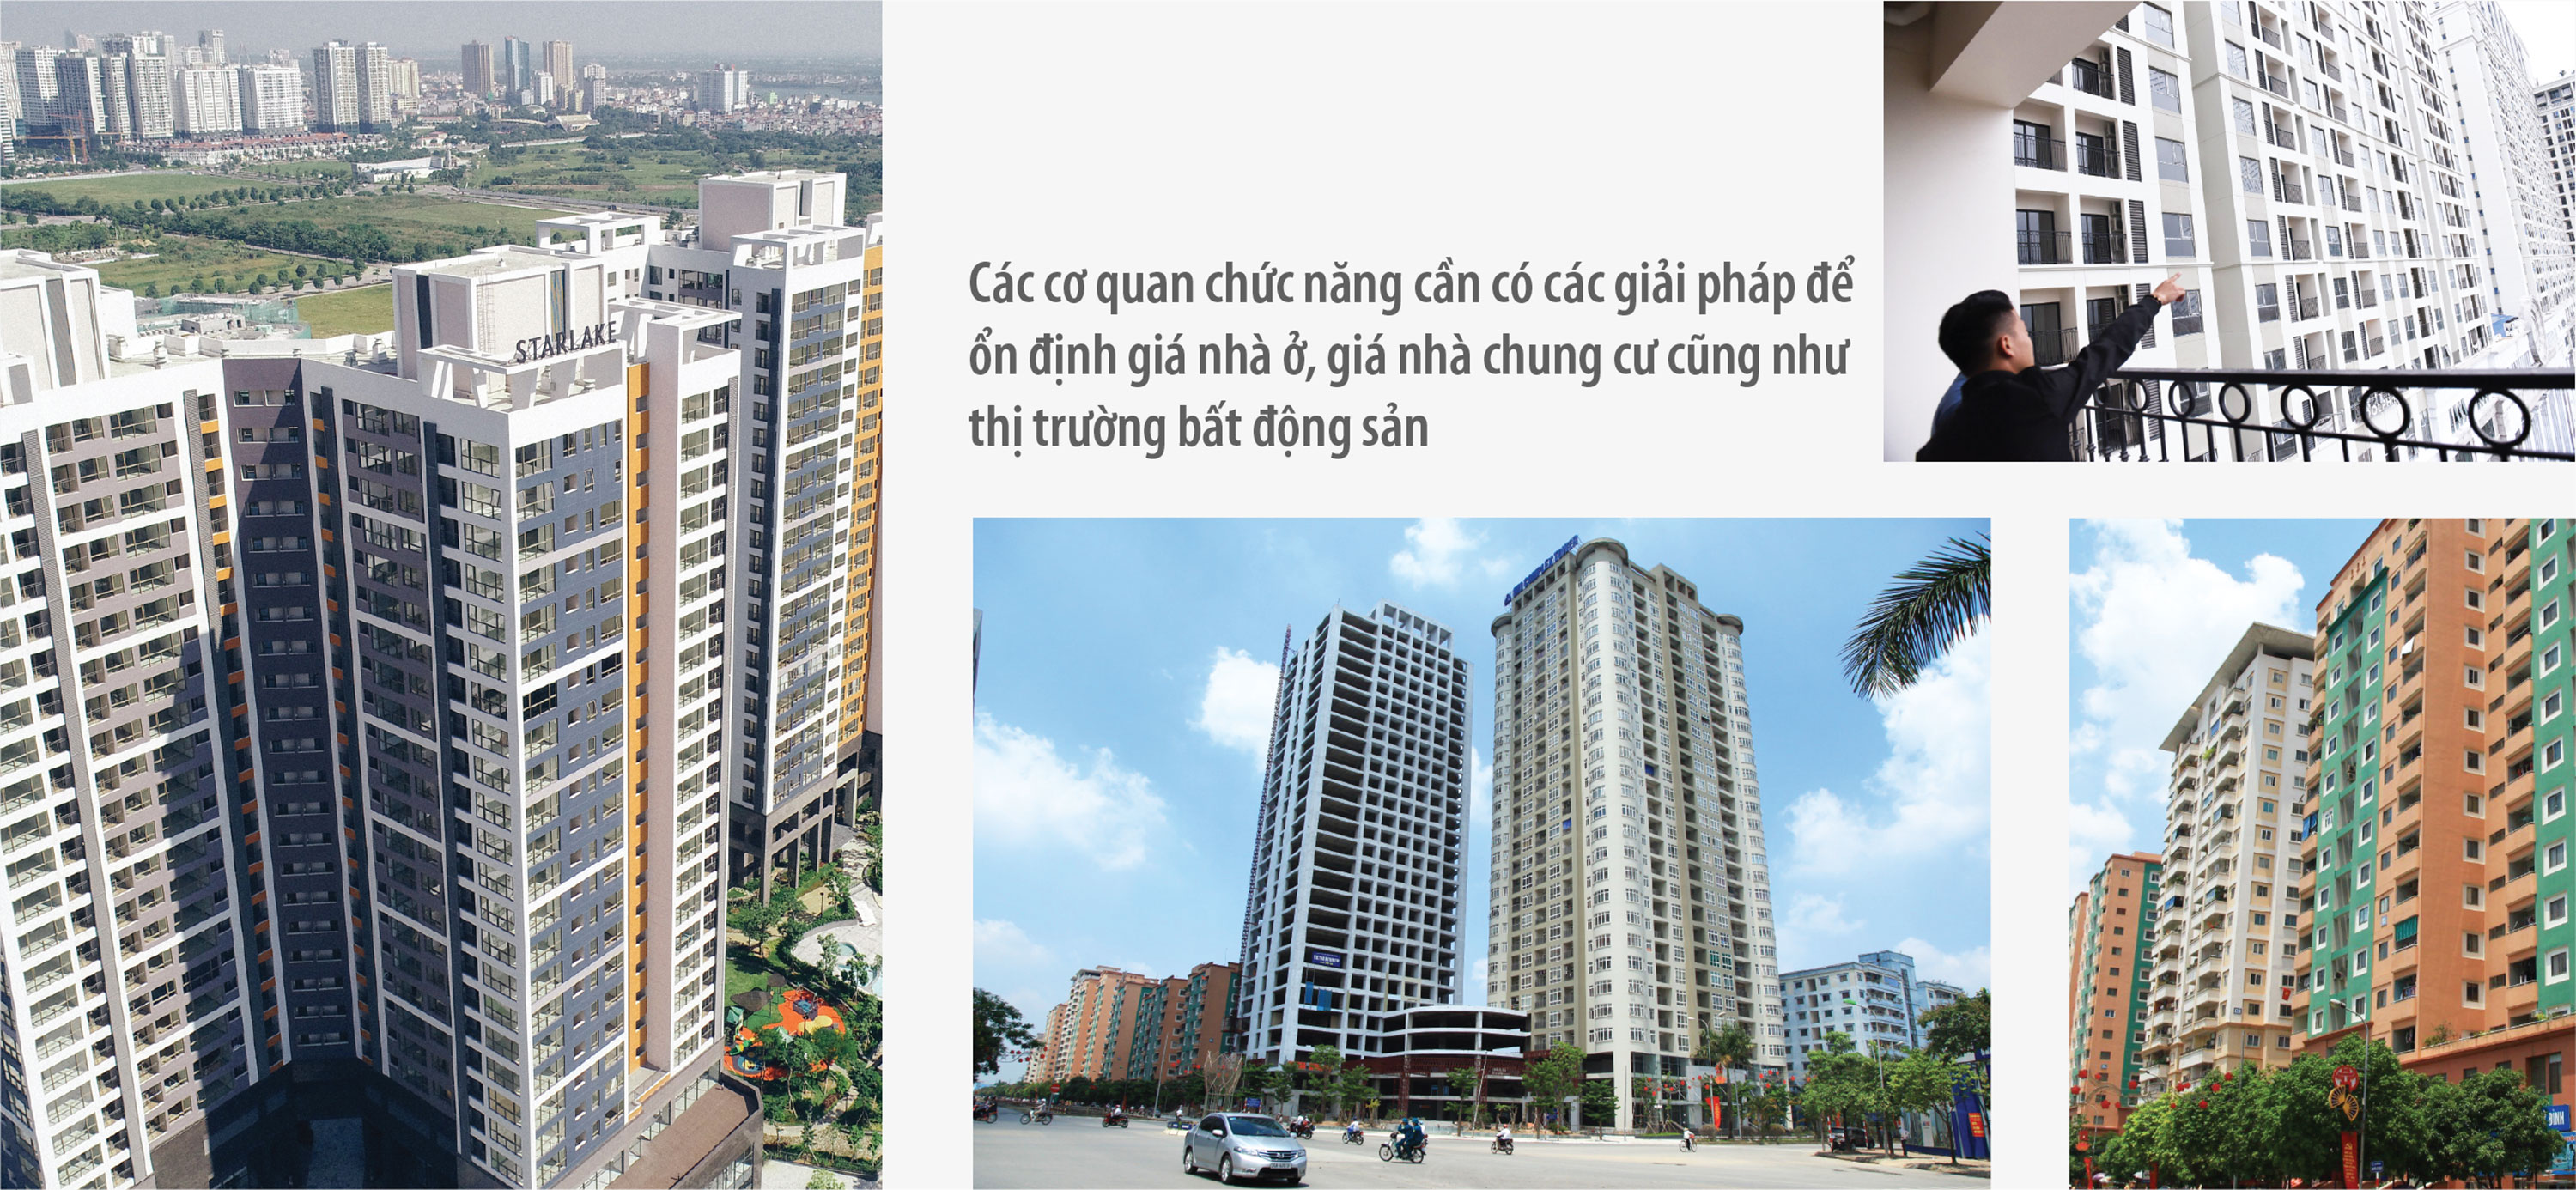 Giá chung cư tại Hà Nội tăng chóng mặt: chiêu trò “thổi giá”? - Ảnh 5